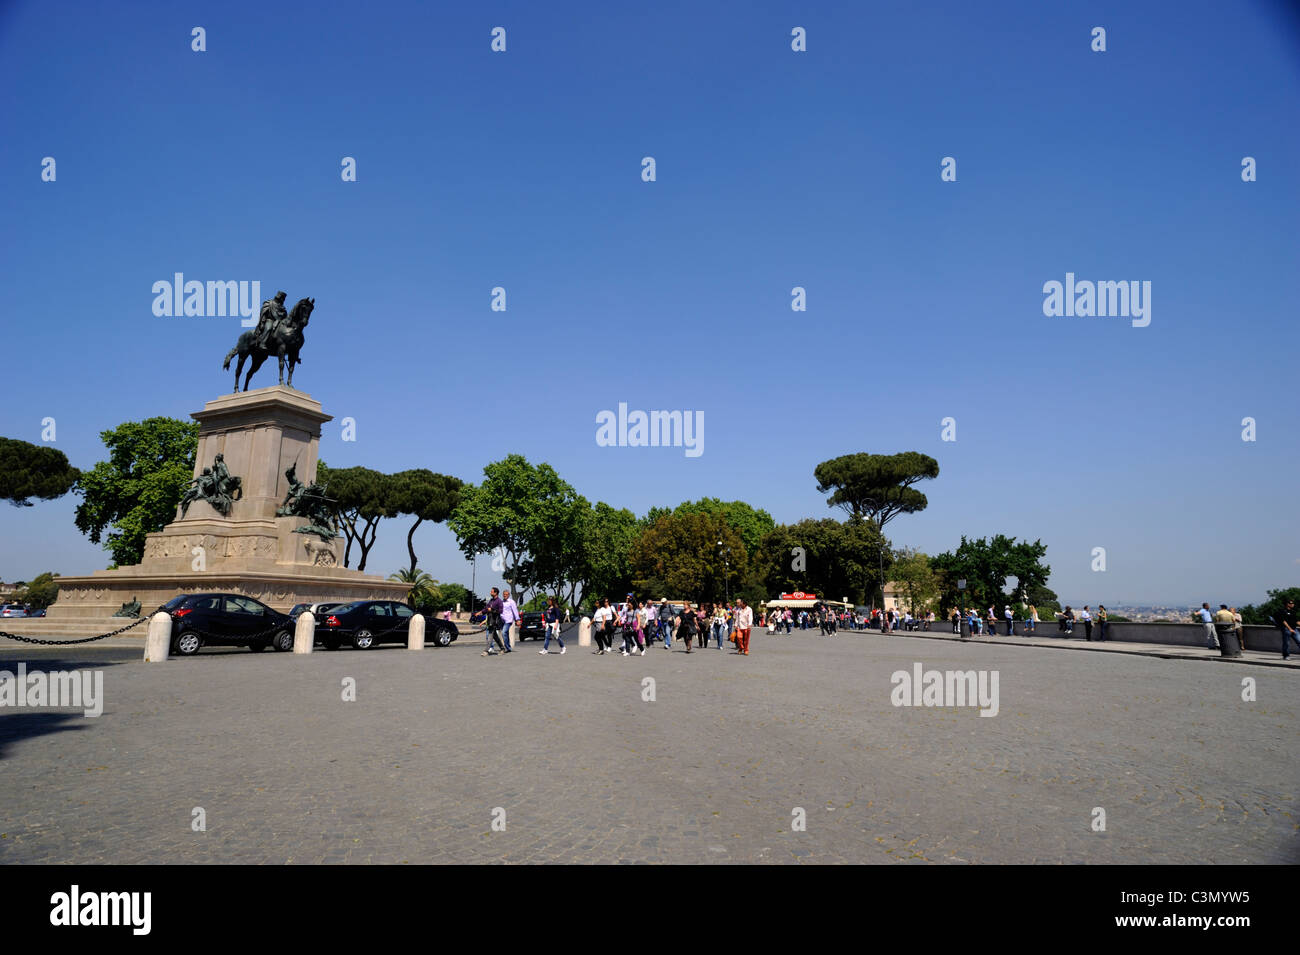 Italy, Rome, Janiculum Hill, Garibaldi monument Stock Photo